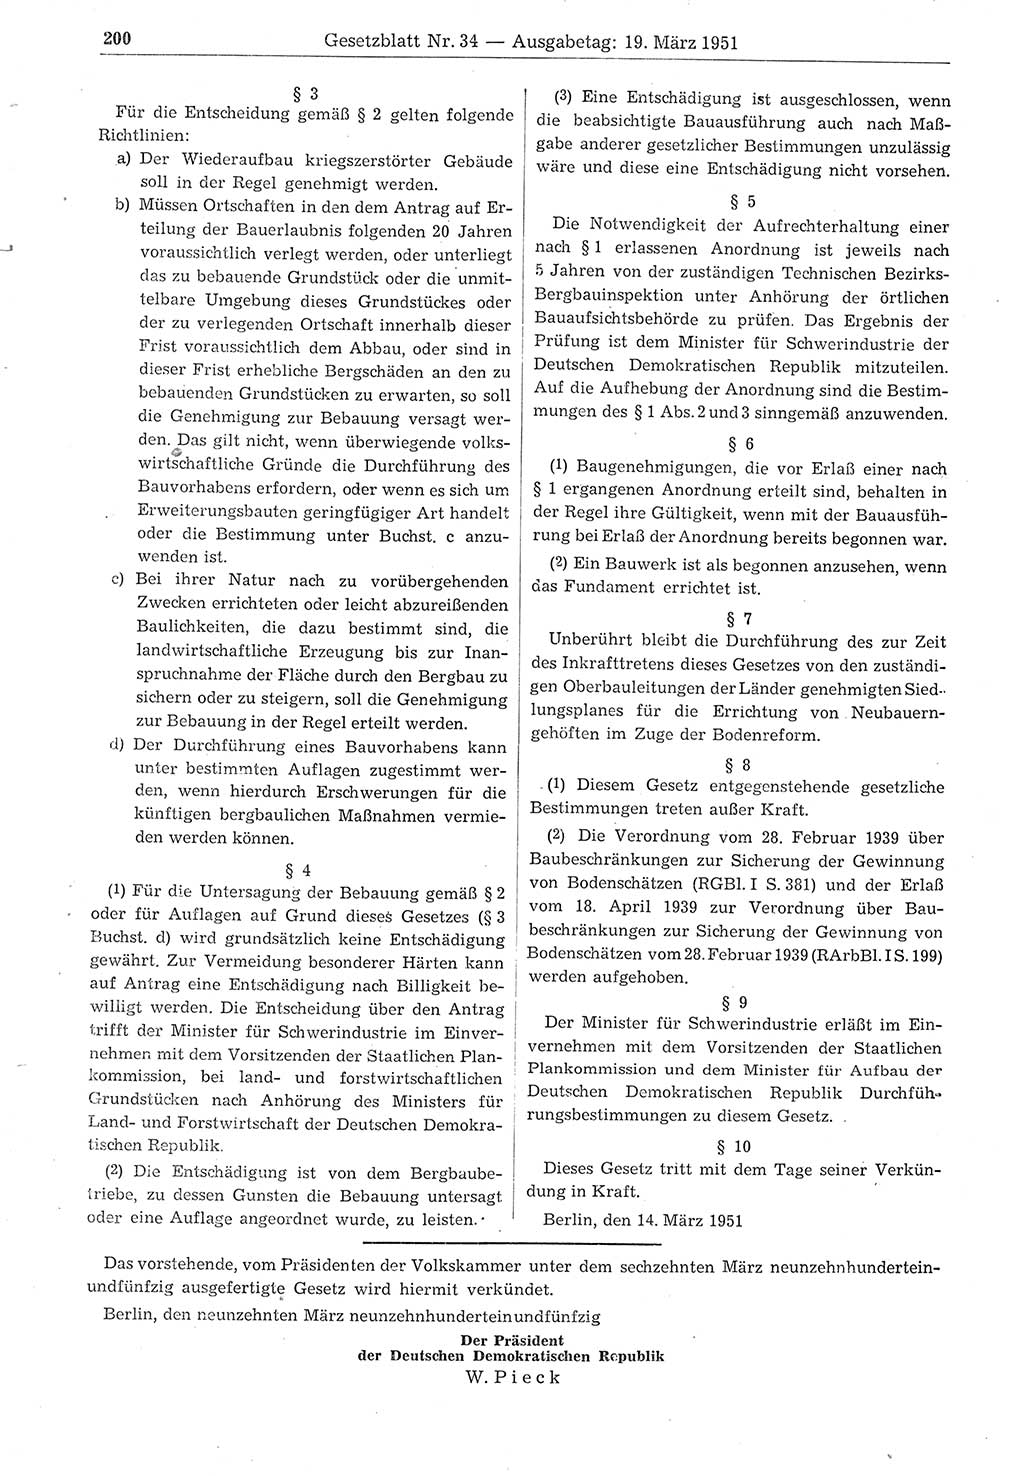 Gesetzblatt (GBl.) der Deutschen Demokratischen Republik (DDR) 1951, Seite 200 (GBl. DDR 1951, S. 200)